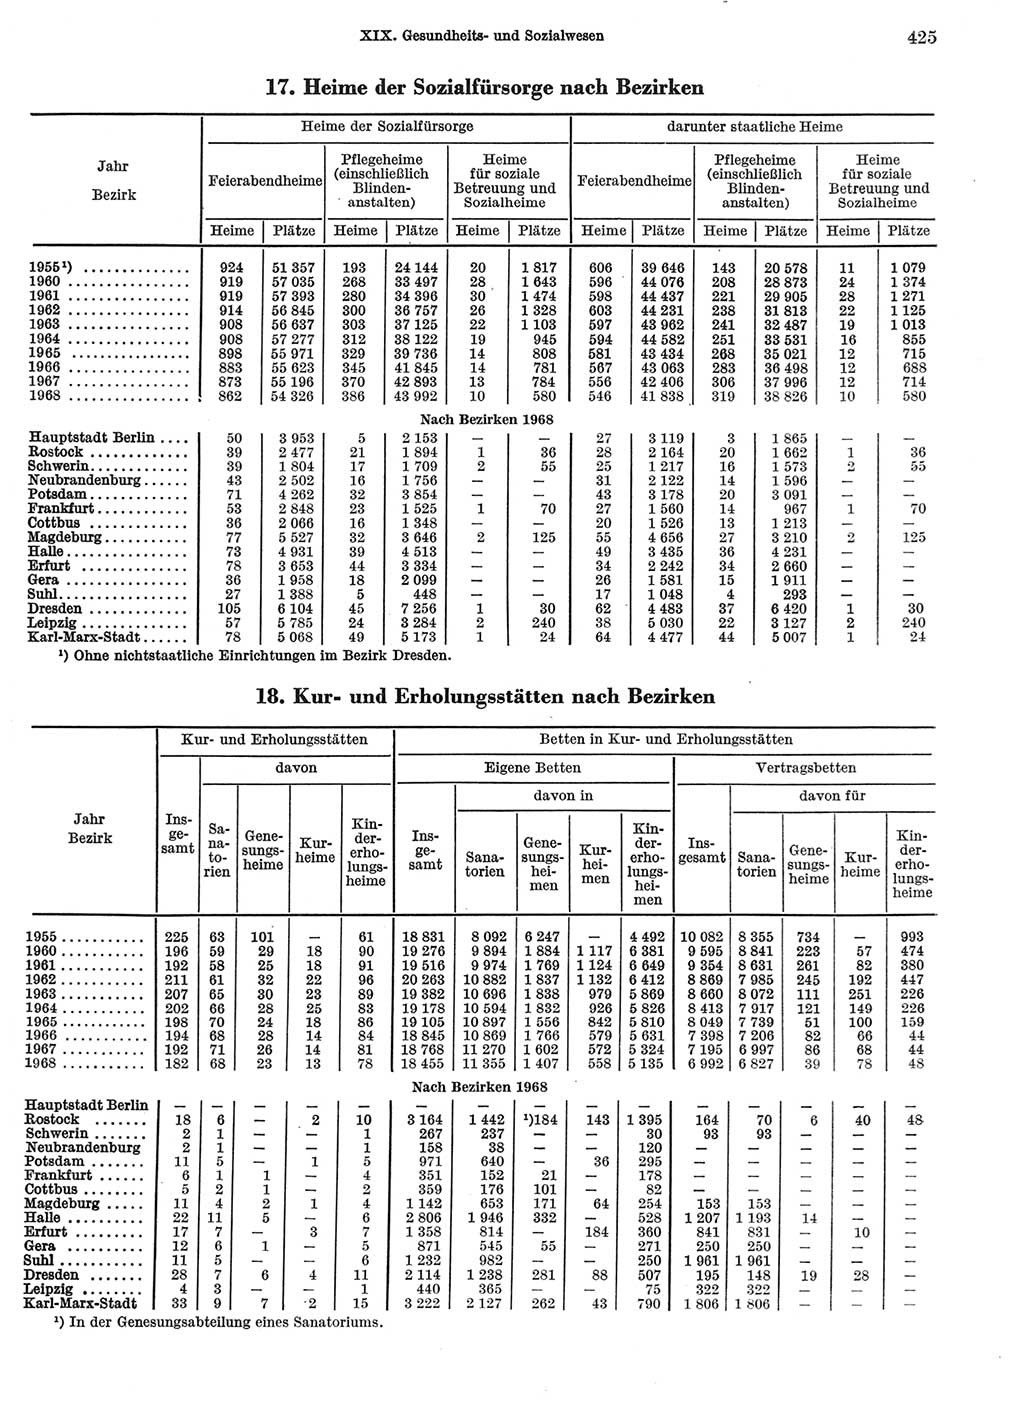 Statistisches Jahrbuch der Deutschen Demokratischen Republik (DDR) 1969, Seite 425 (Stat. Jb. DDR 1969, S. 425)